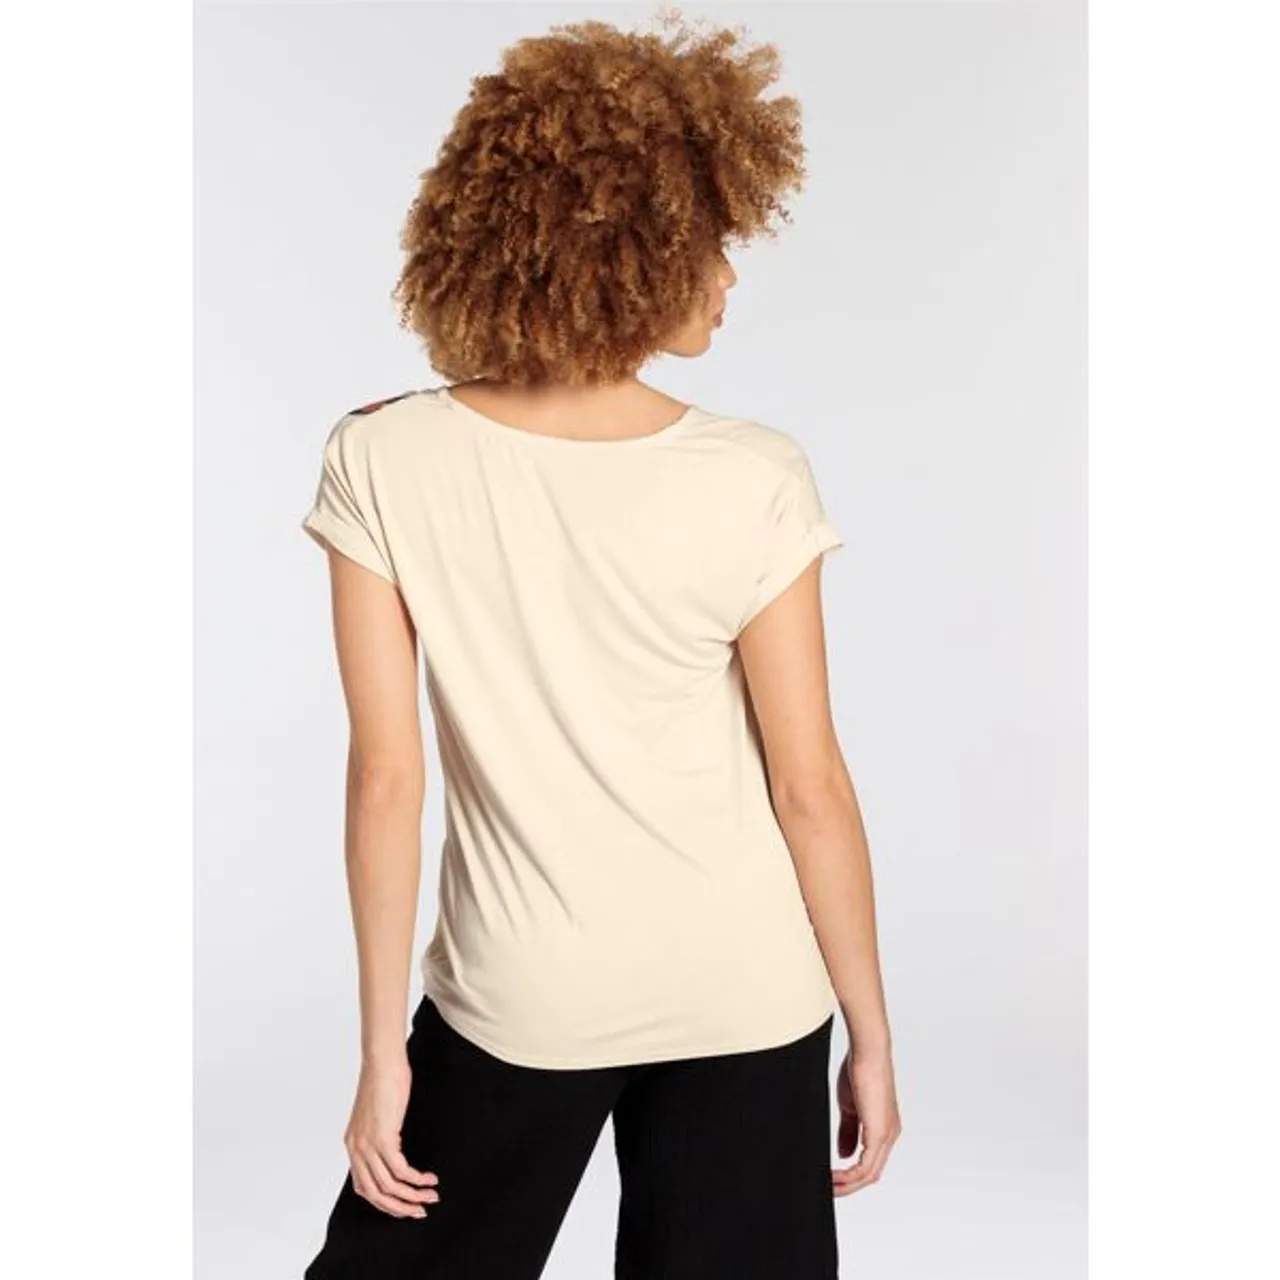 Shirtbluse BOYSEN'S Gr. 34, beige (sand) Damen Blusen ärmellose im modischen Design mit V-Ausschnitt - NEUE KOLLEKTION